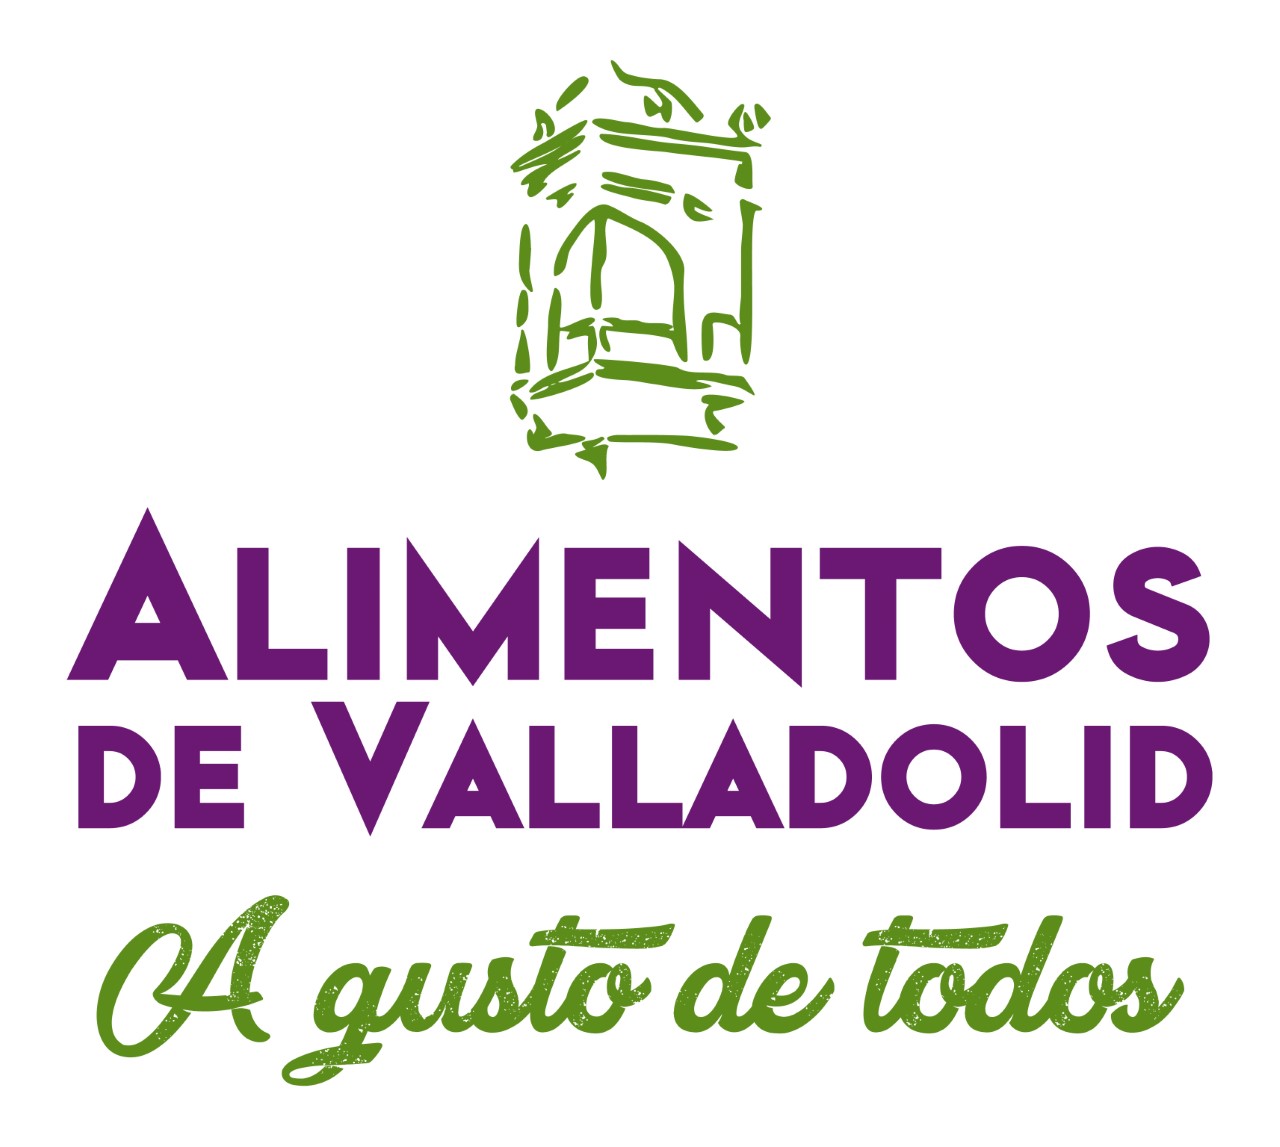 Alimentos de Valladolid. Diputación provincial.